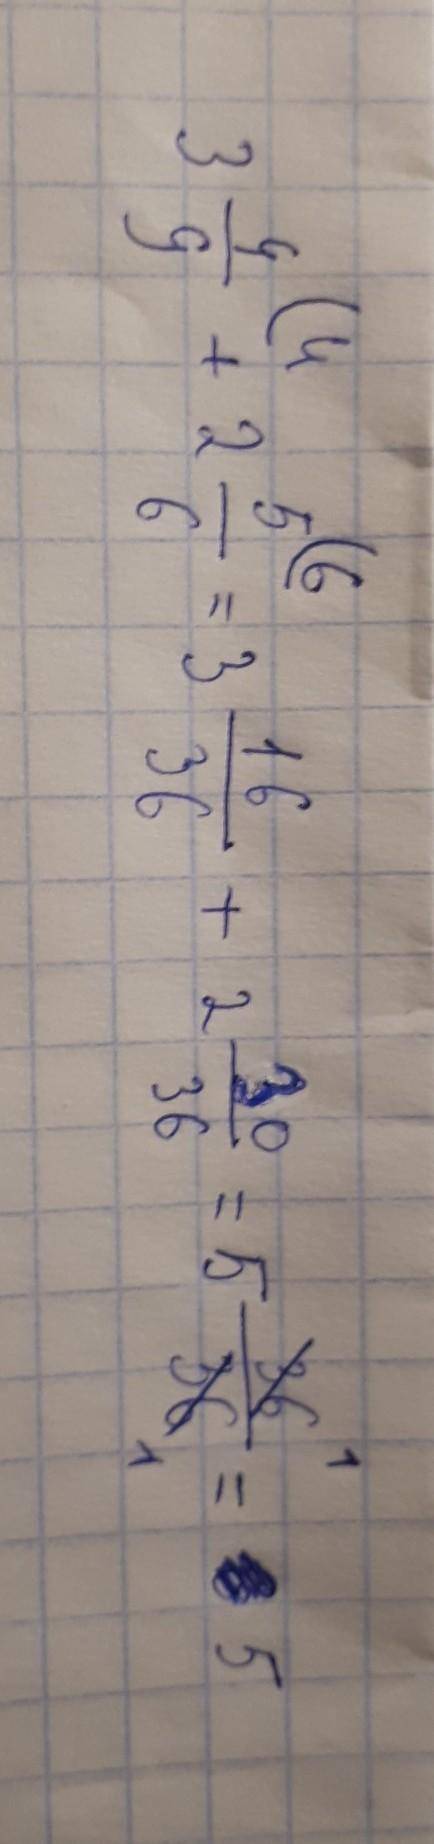 Как сложить дробь с целыми числами 3 4/9 + 2 5/6 распишите пож решение